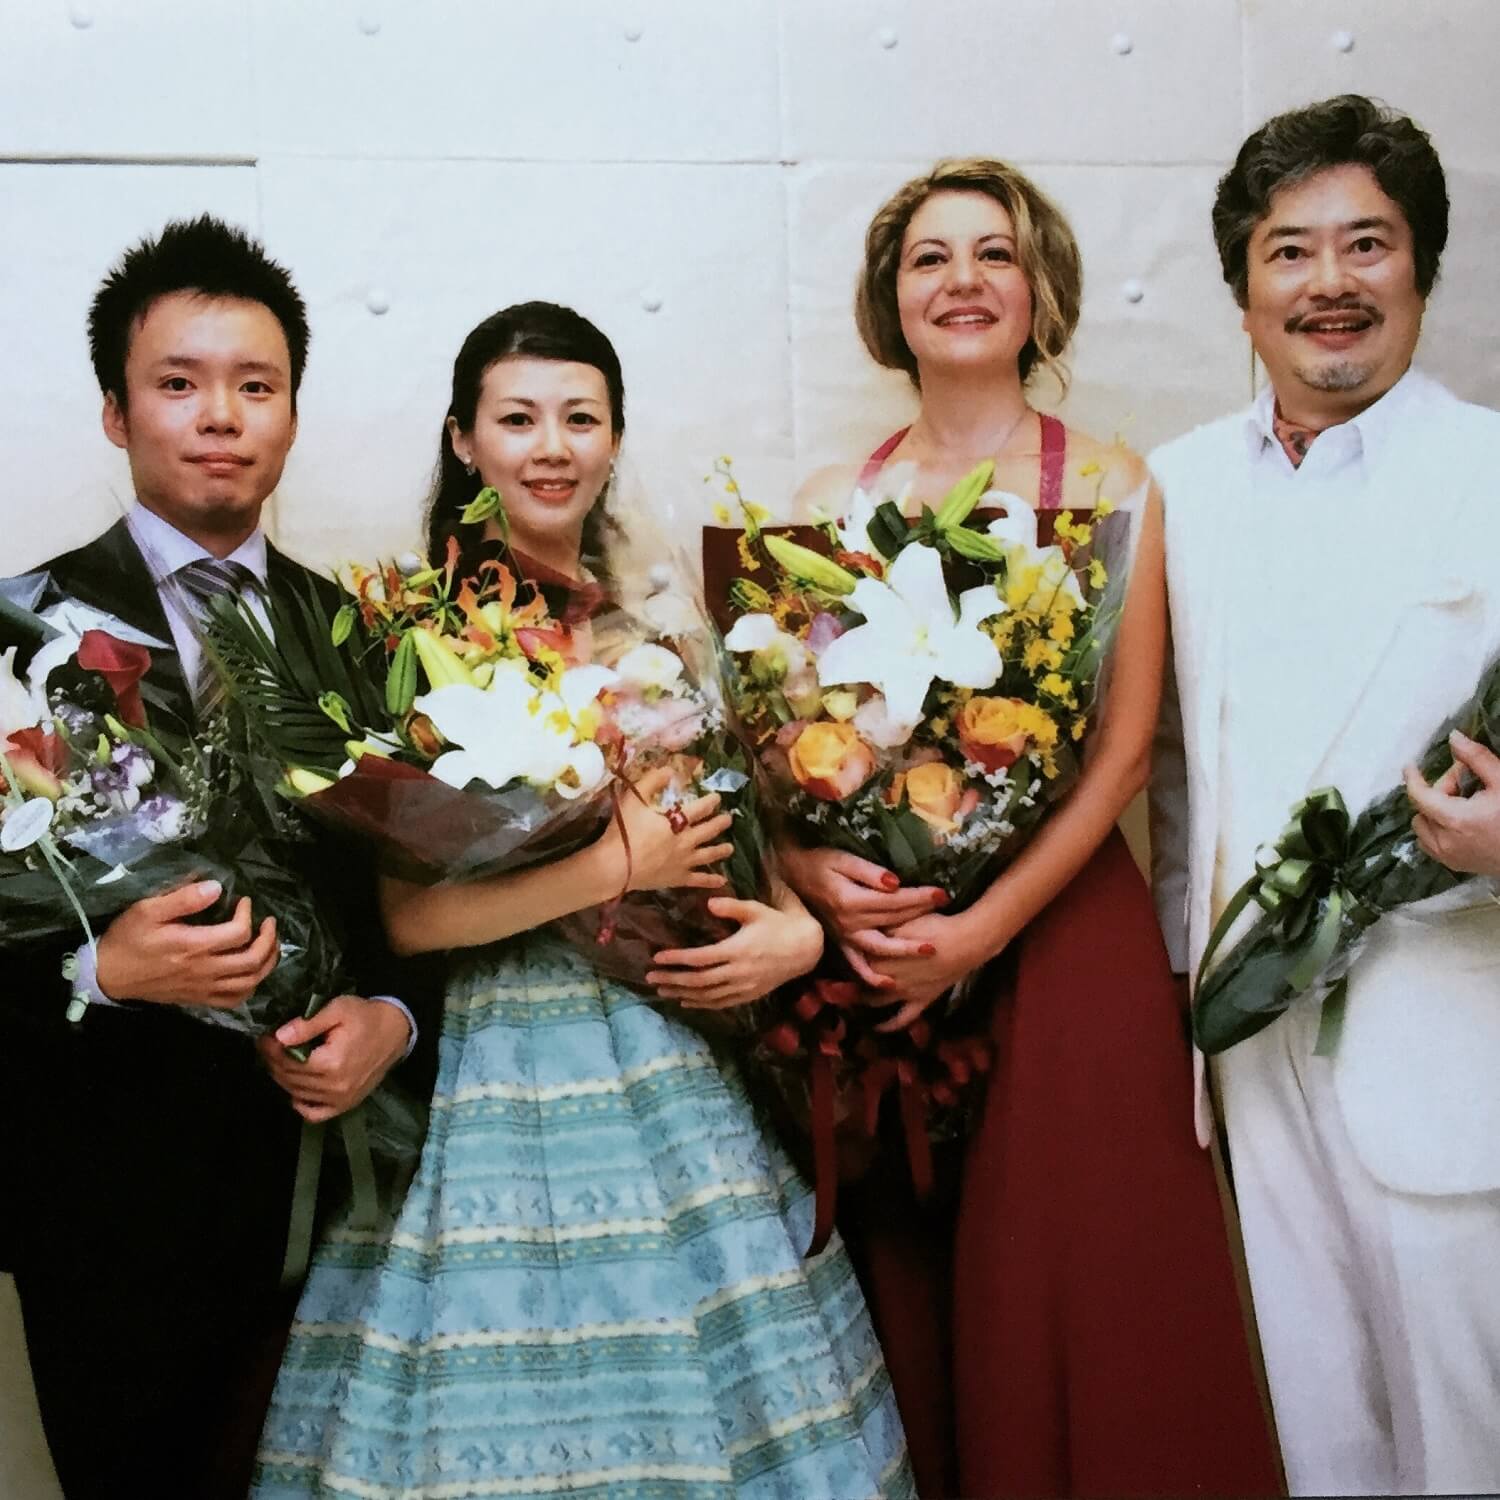 In Tokyo with Yukari Saito - soprano, Kazuhiro Kotetsu - bass, and Keisuke Tsushima - piano 